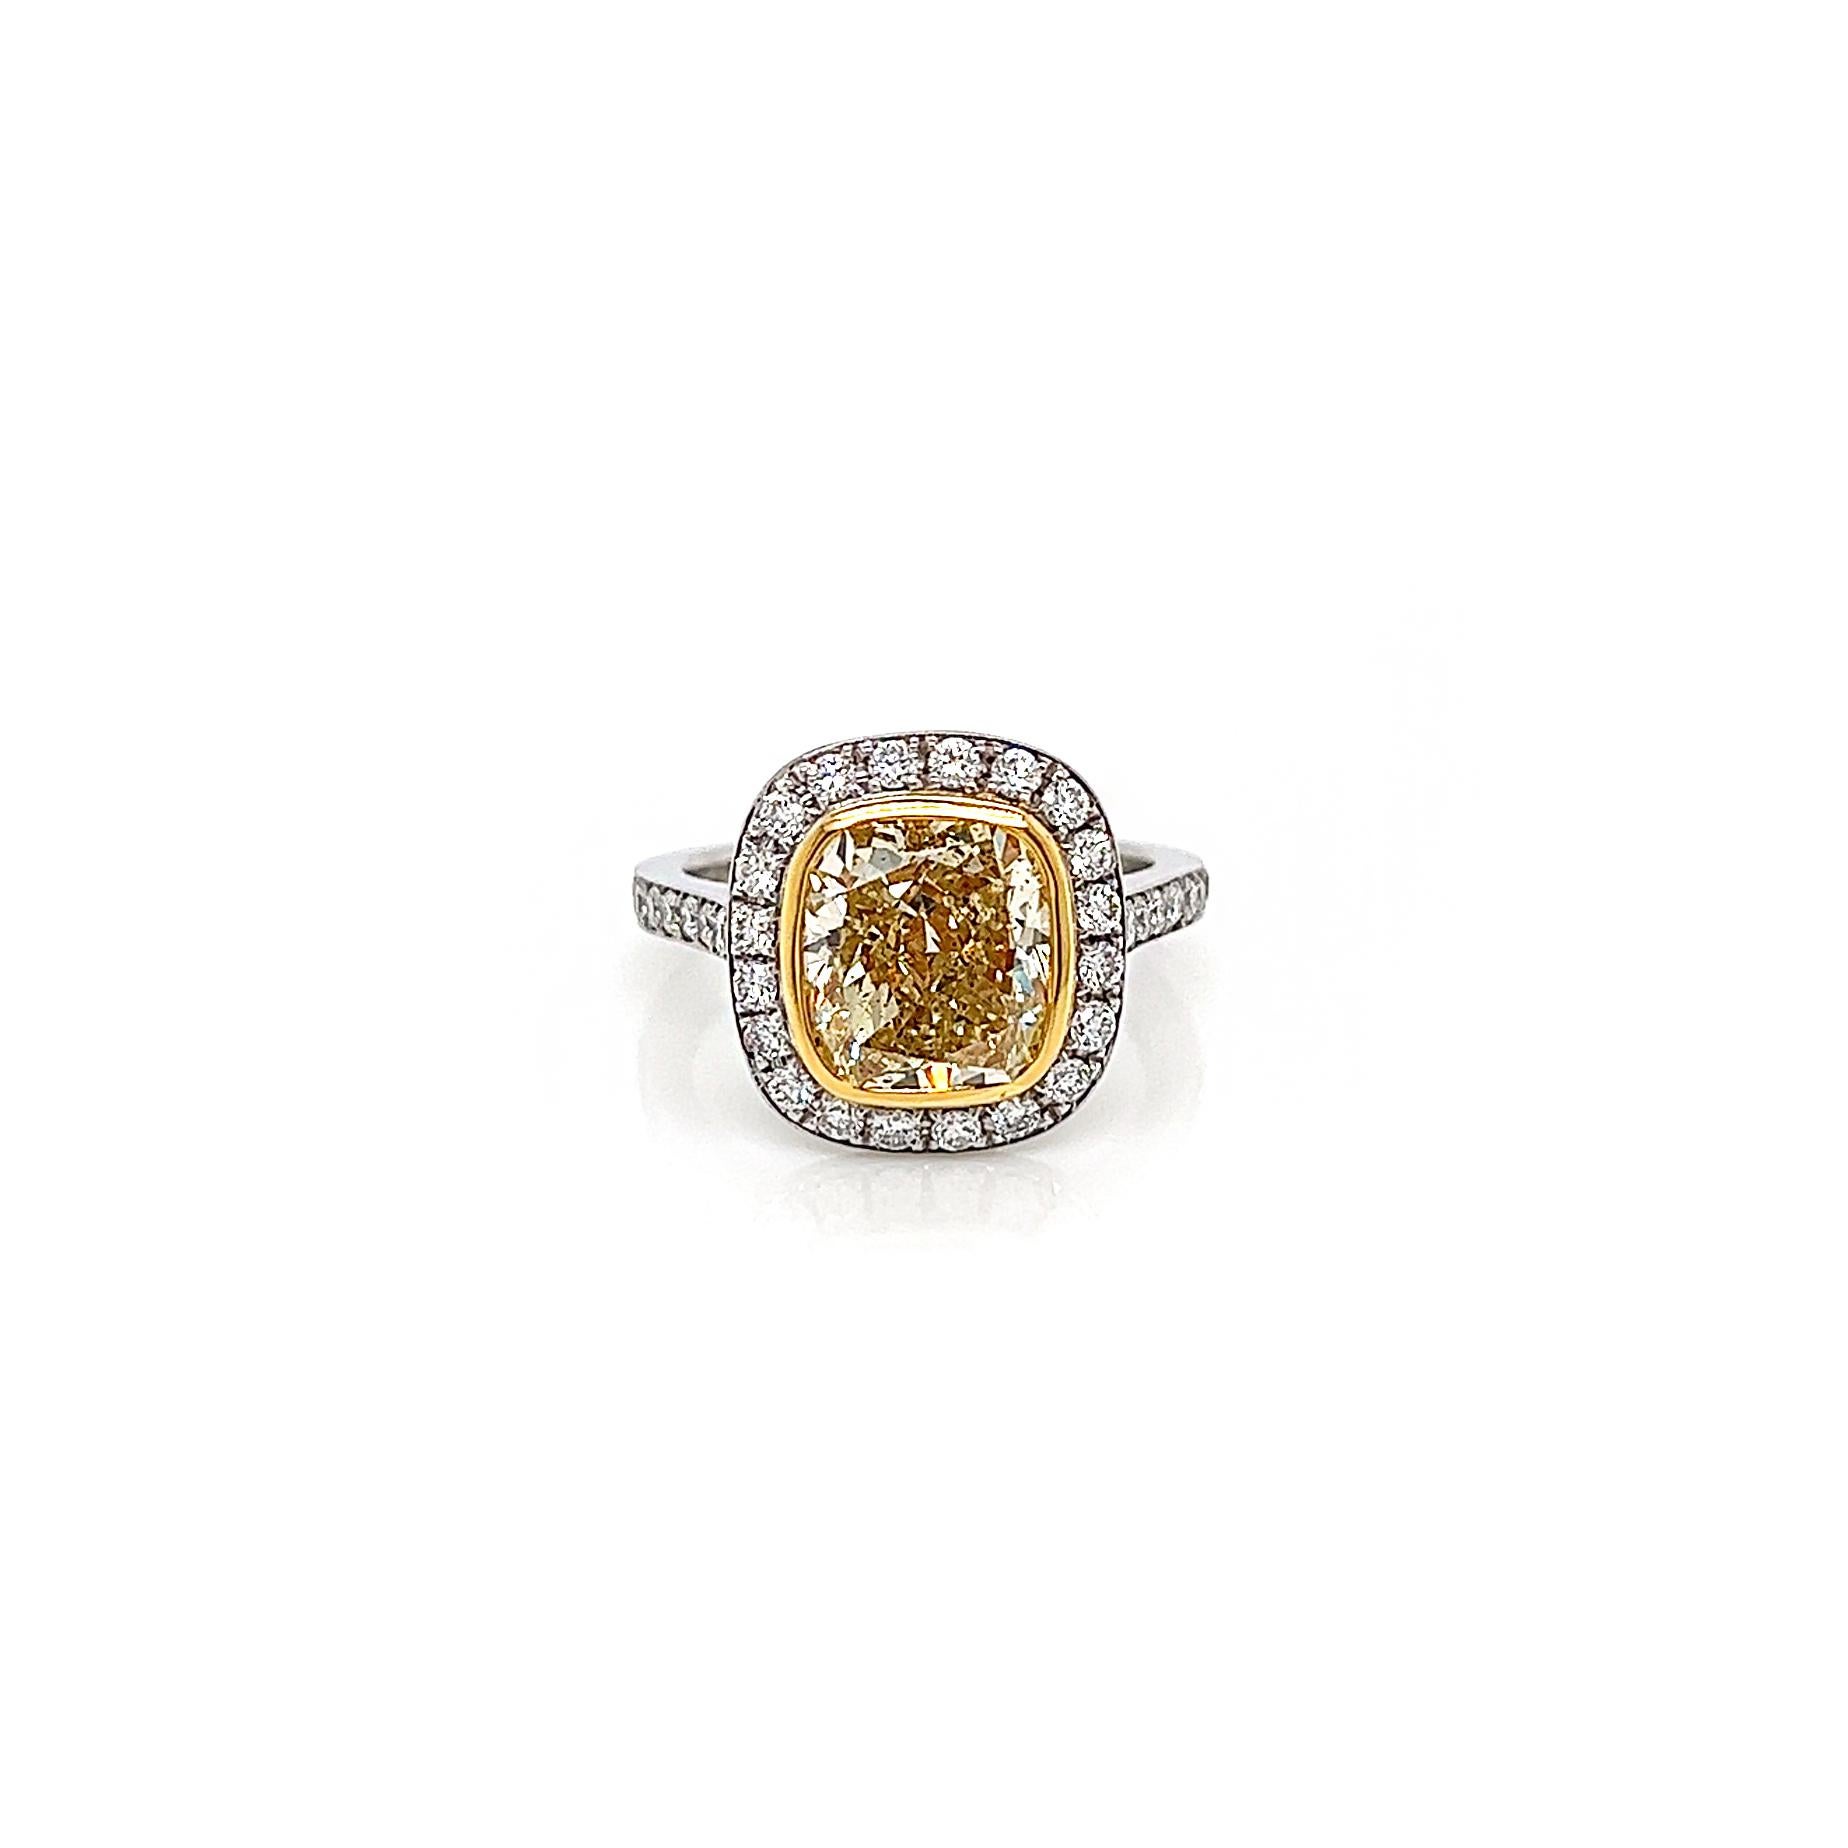 4.bague de fiançailles à diamant jaune de fantaisie de 31 carats pour femme, sertie de pavés. Certifié par le GIA.

Il n'y a rien de mieux que d'apprécier la beauté des diamants de couleur vive dans des bijoux finement fabriqués, sauf peut-être